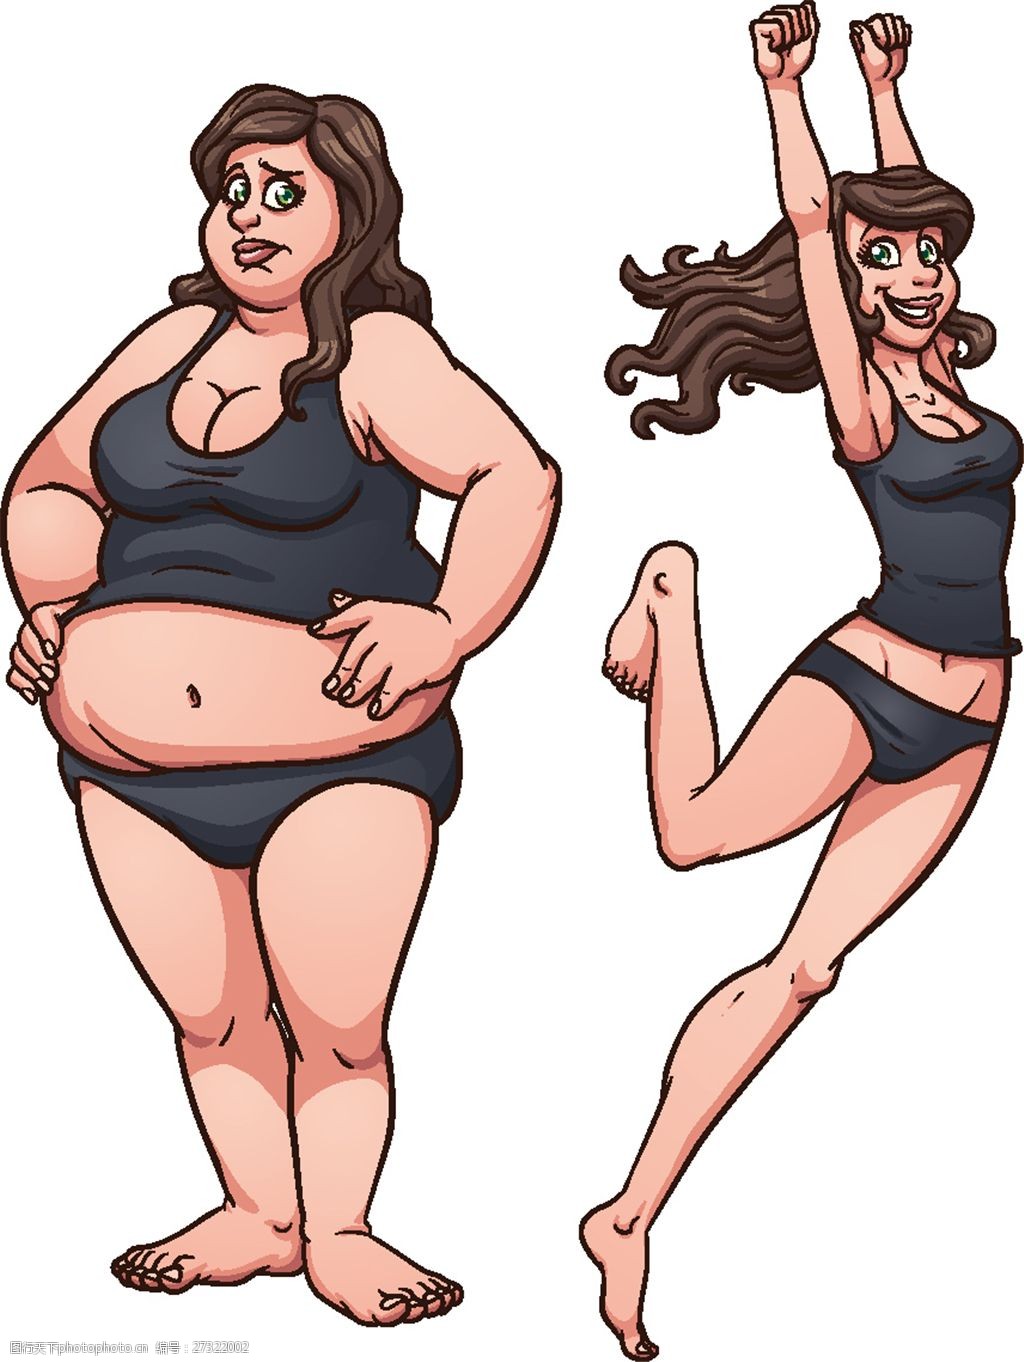 关键词:胖瘦女人对比插画 卡通画 人物 胖瘦女人 对比插画 美女 日常